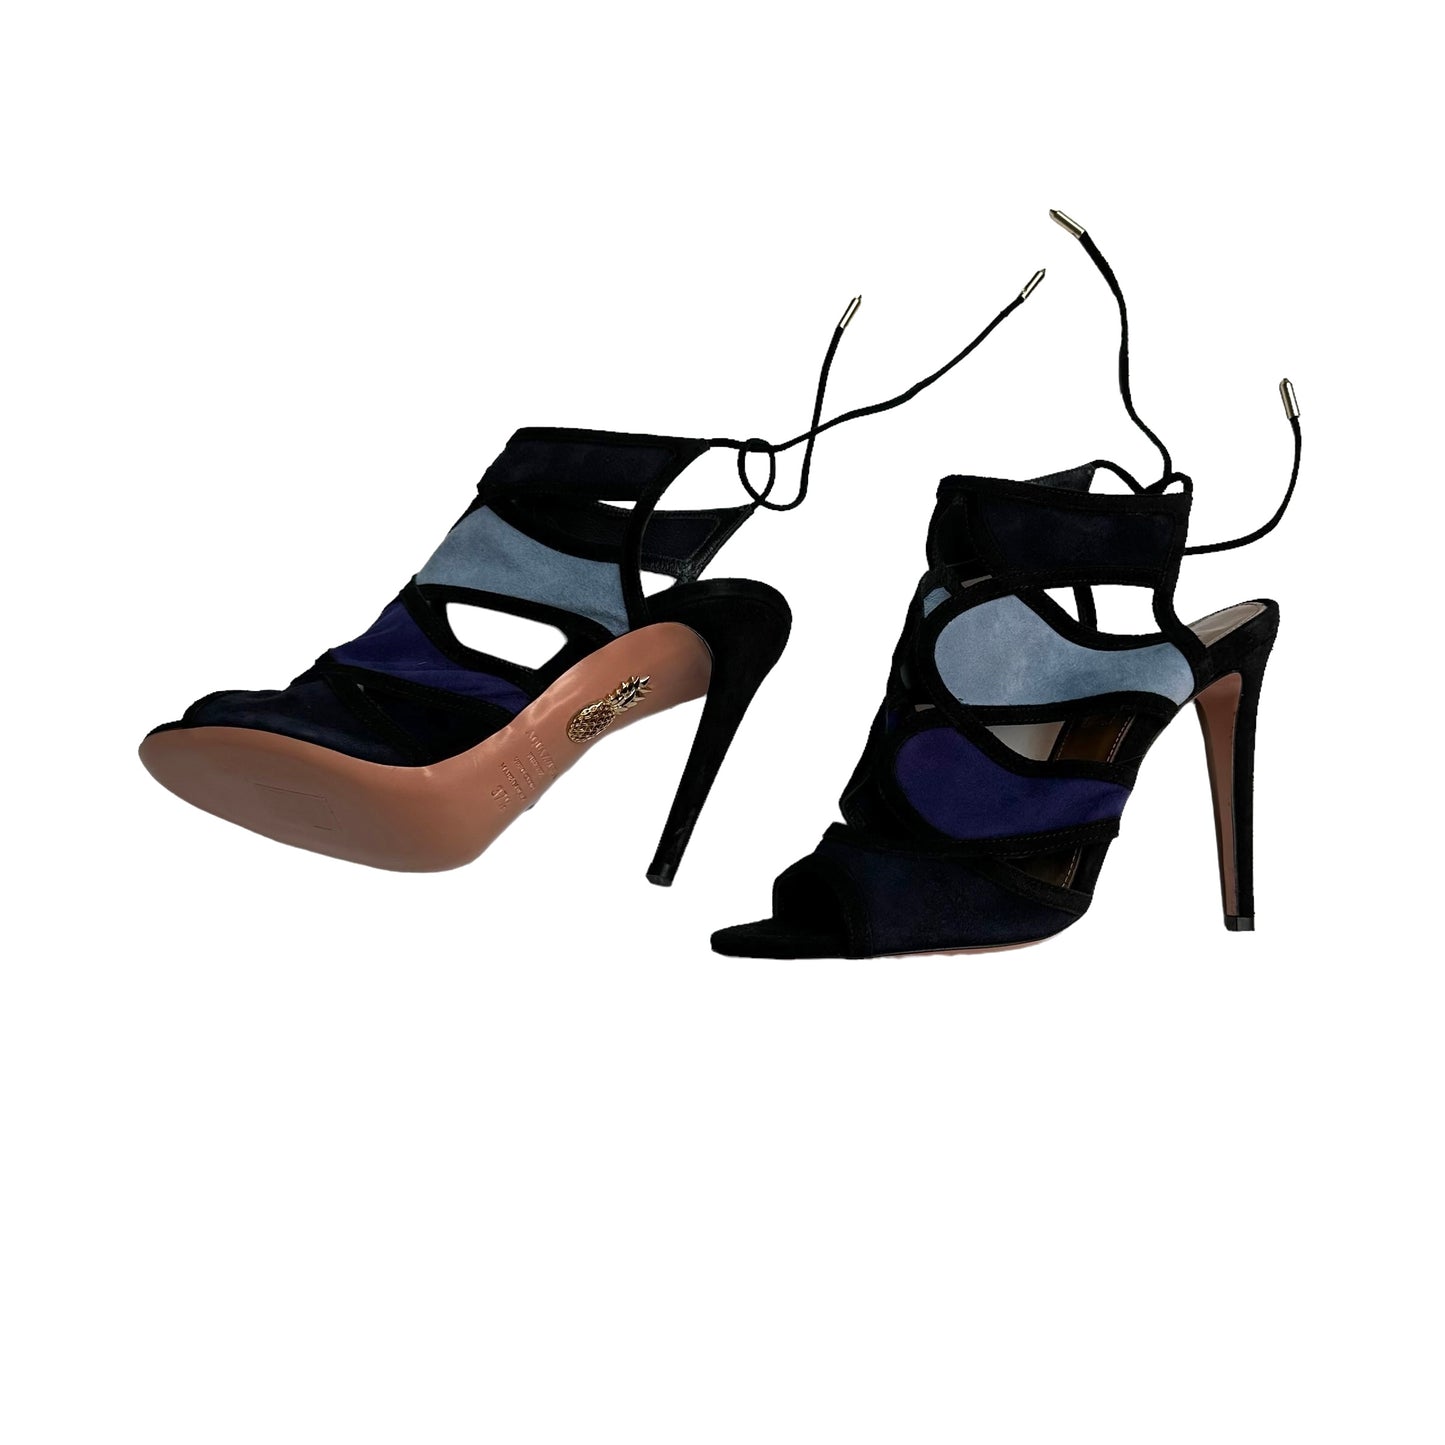 Blue & Black Suede Heels - 7.5